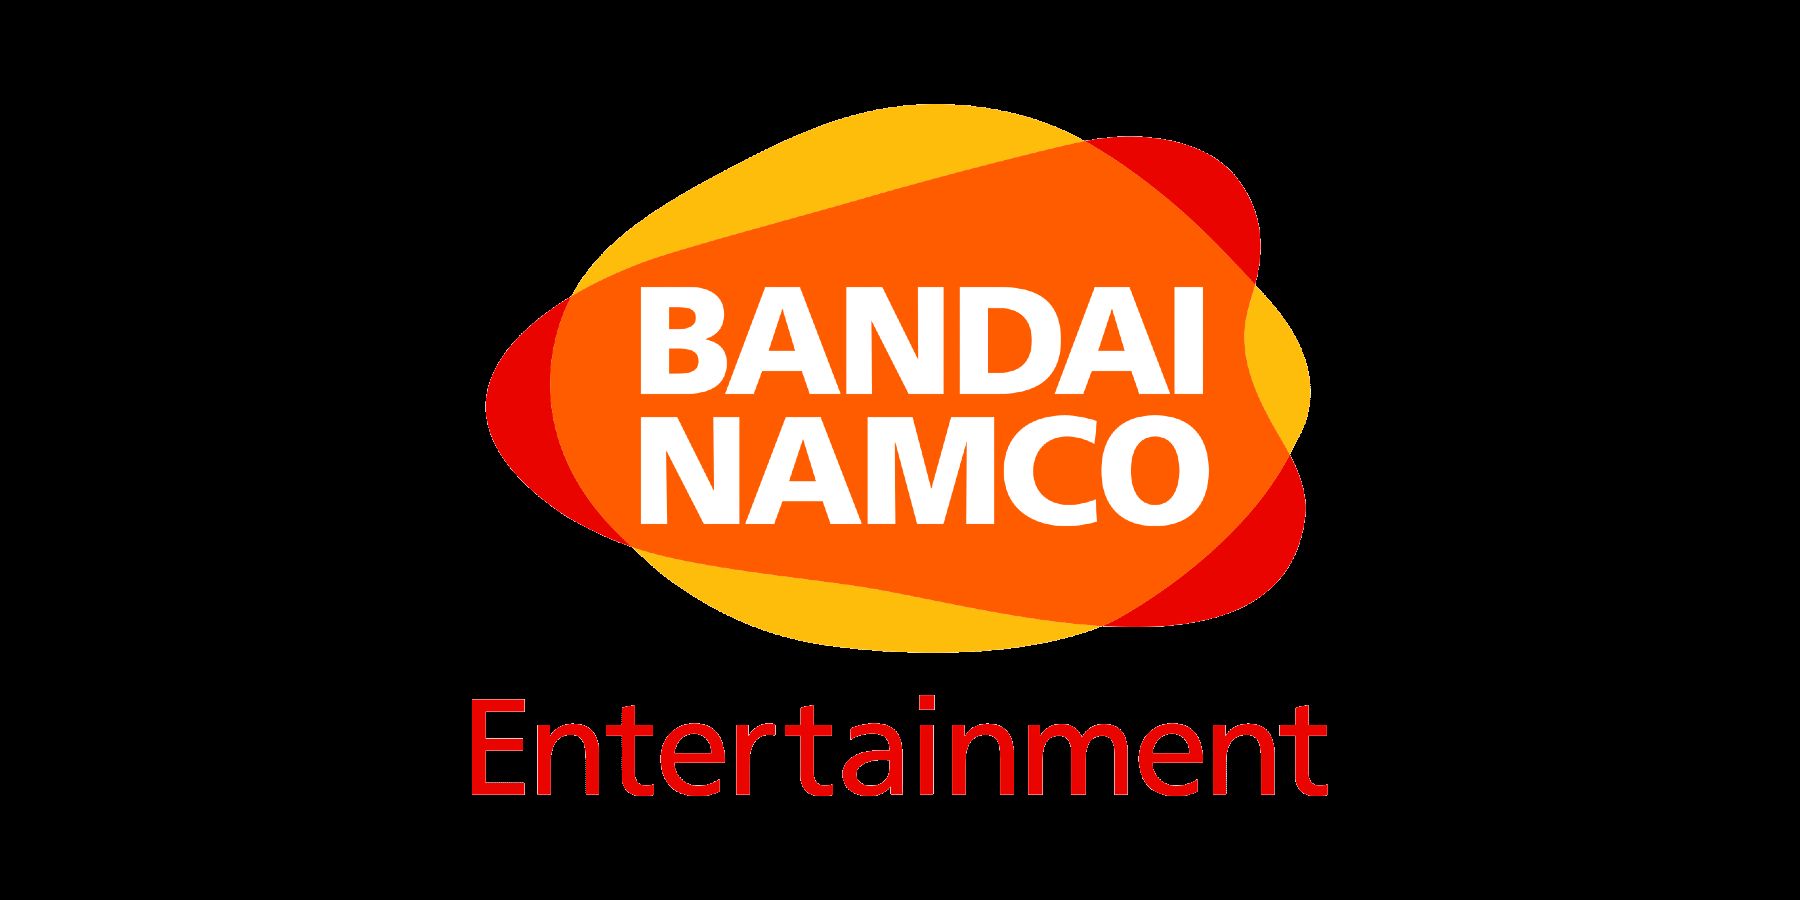 Bandai Namco hat ein neues Logo